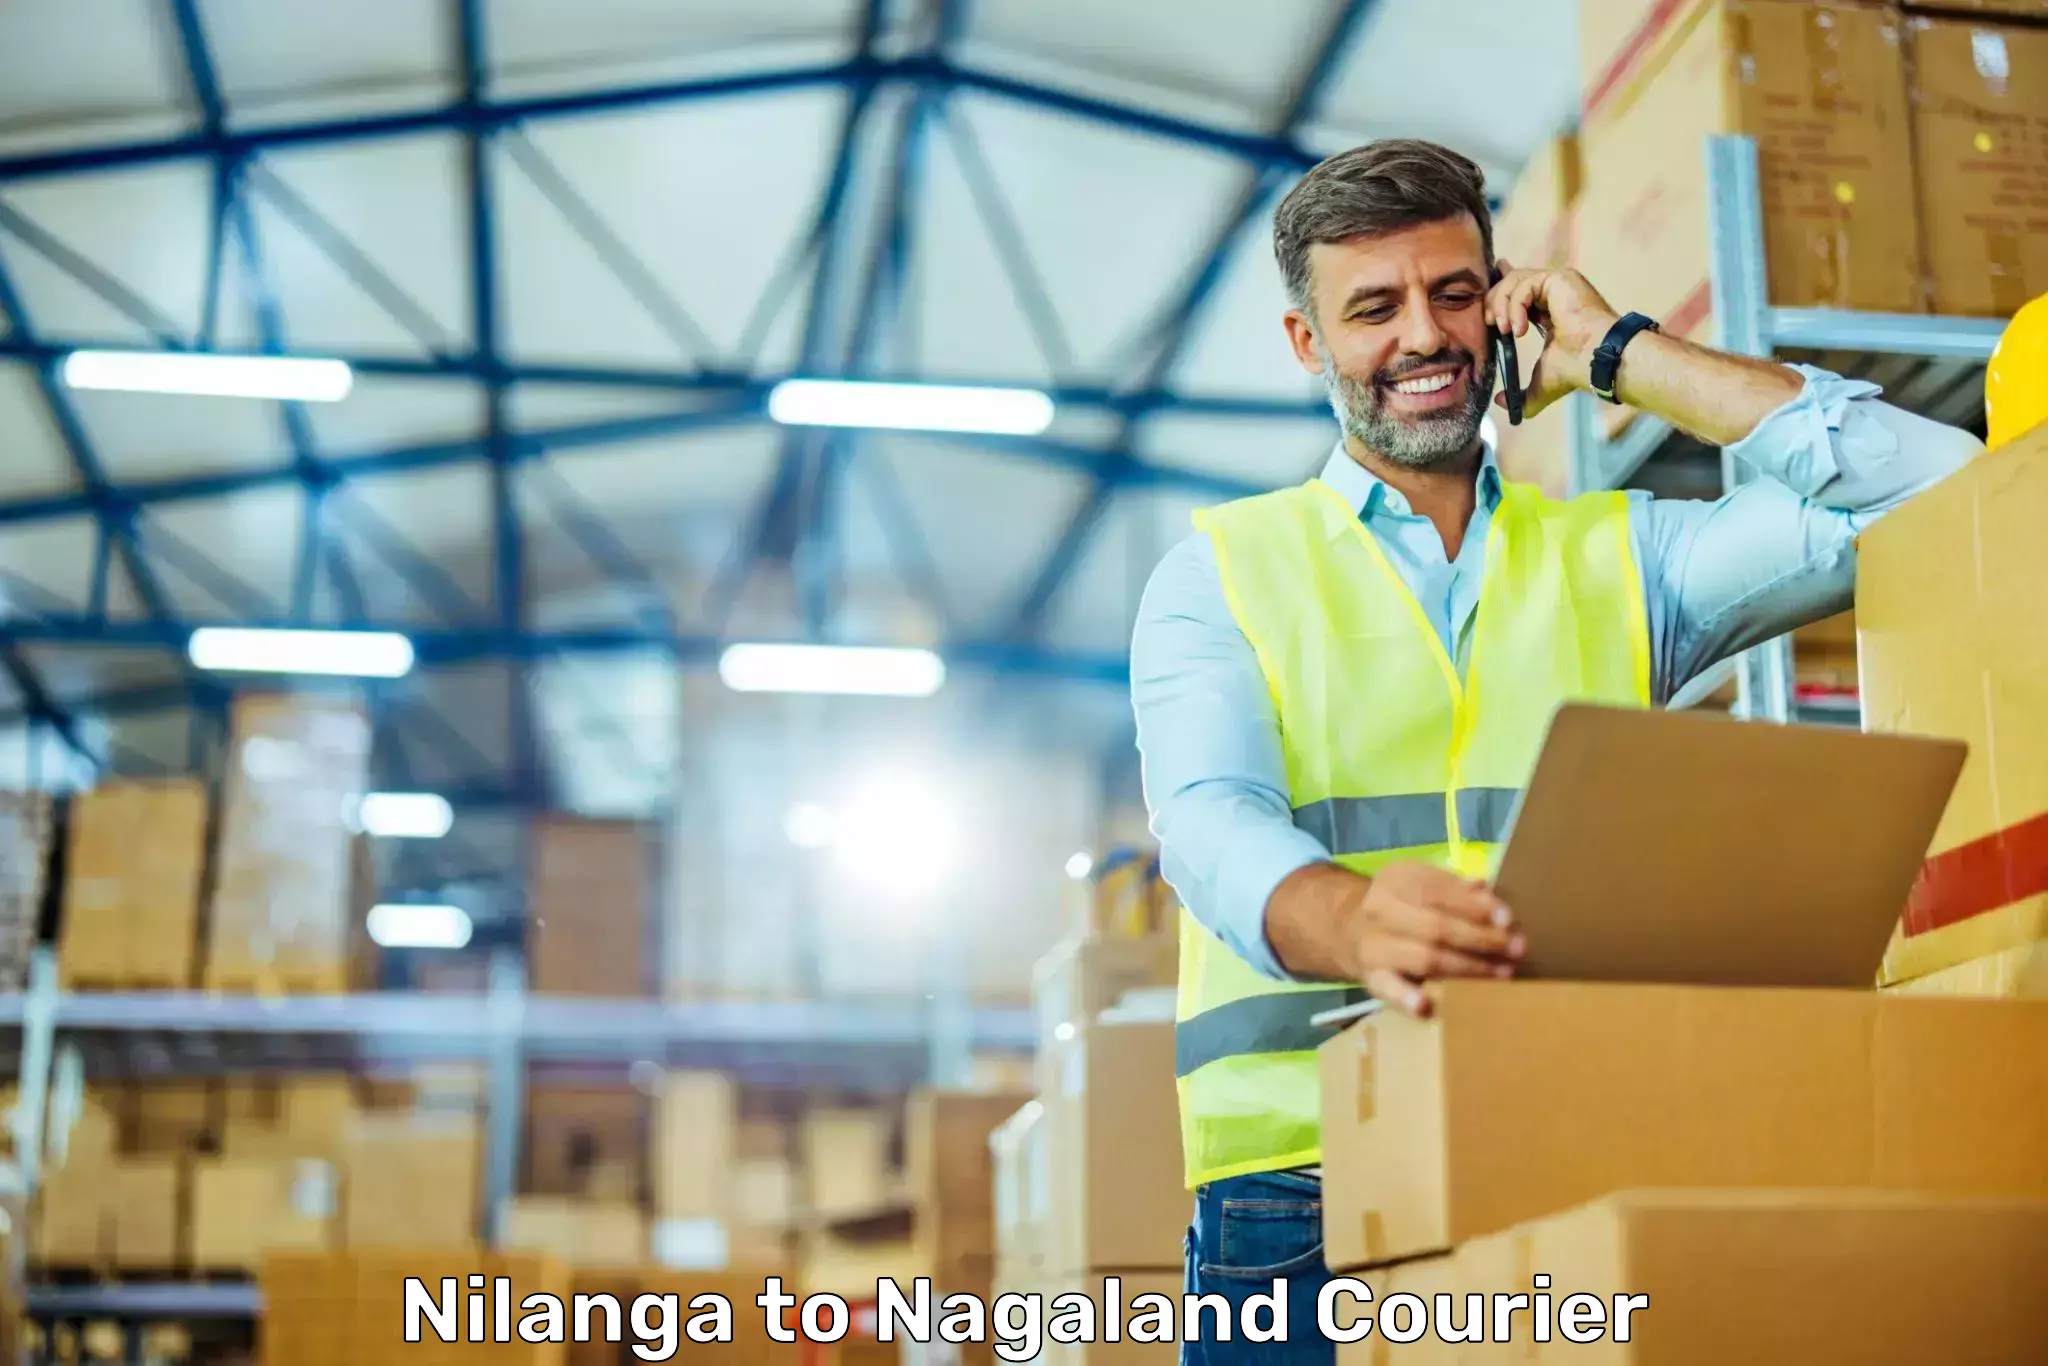 Global shipping networks Nilanga to Mon